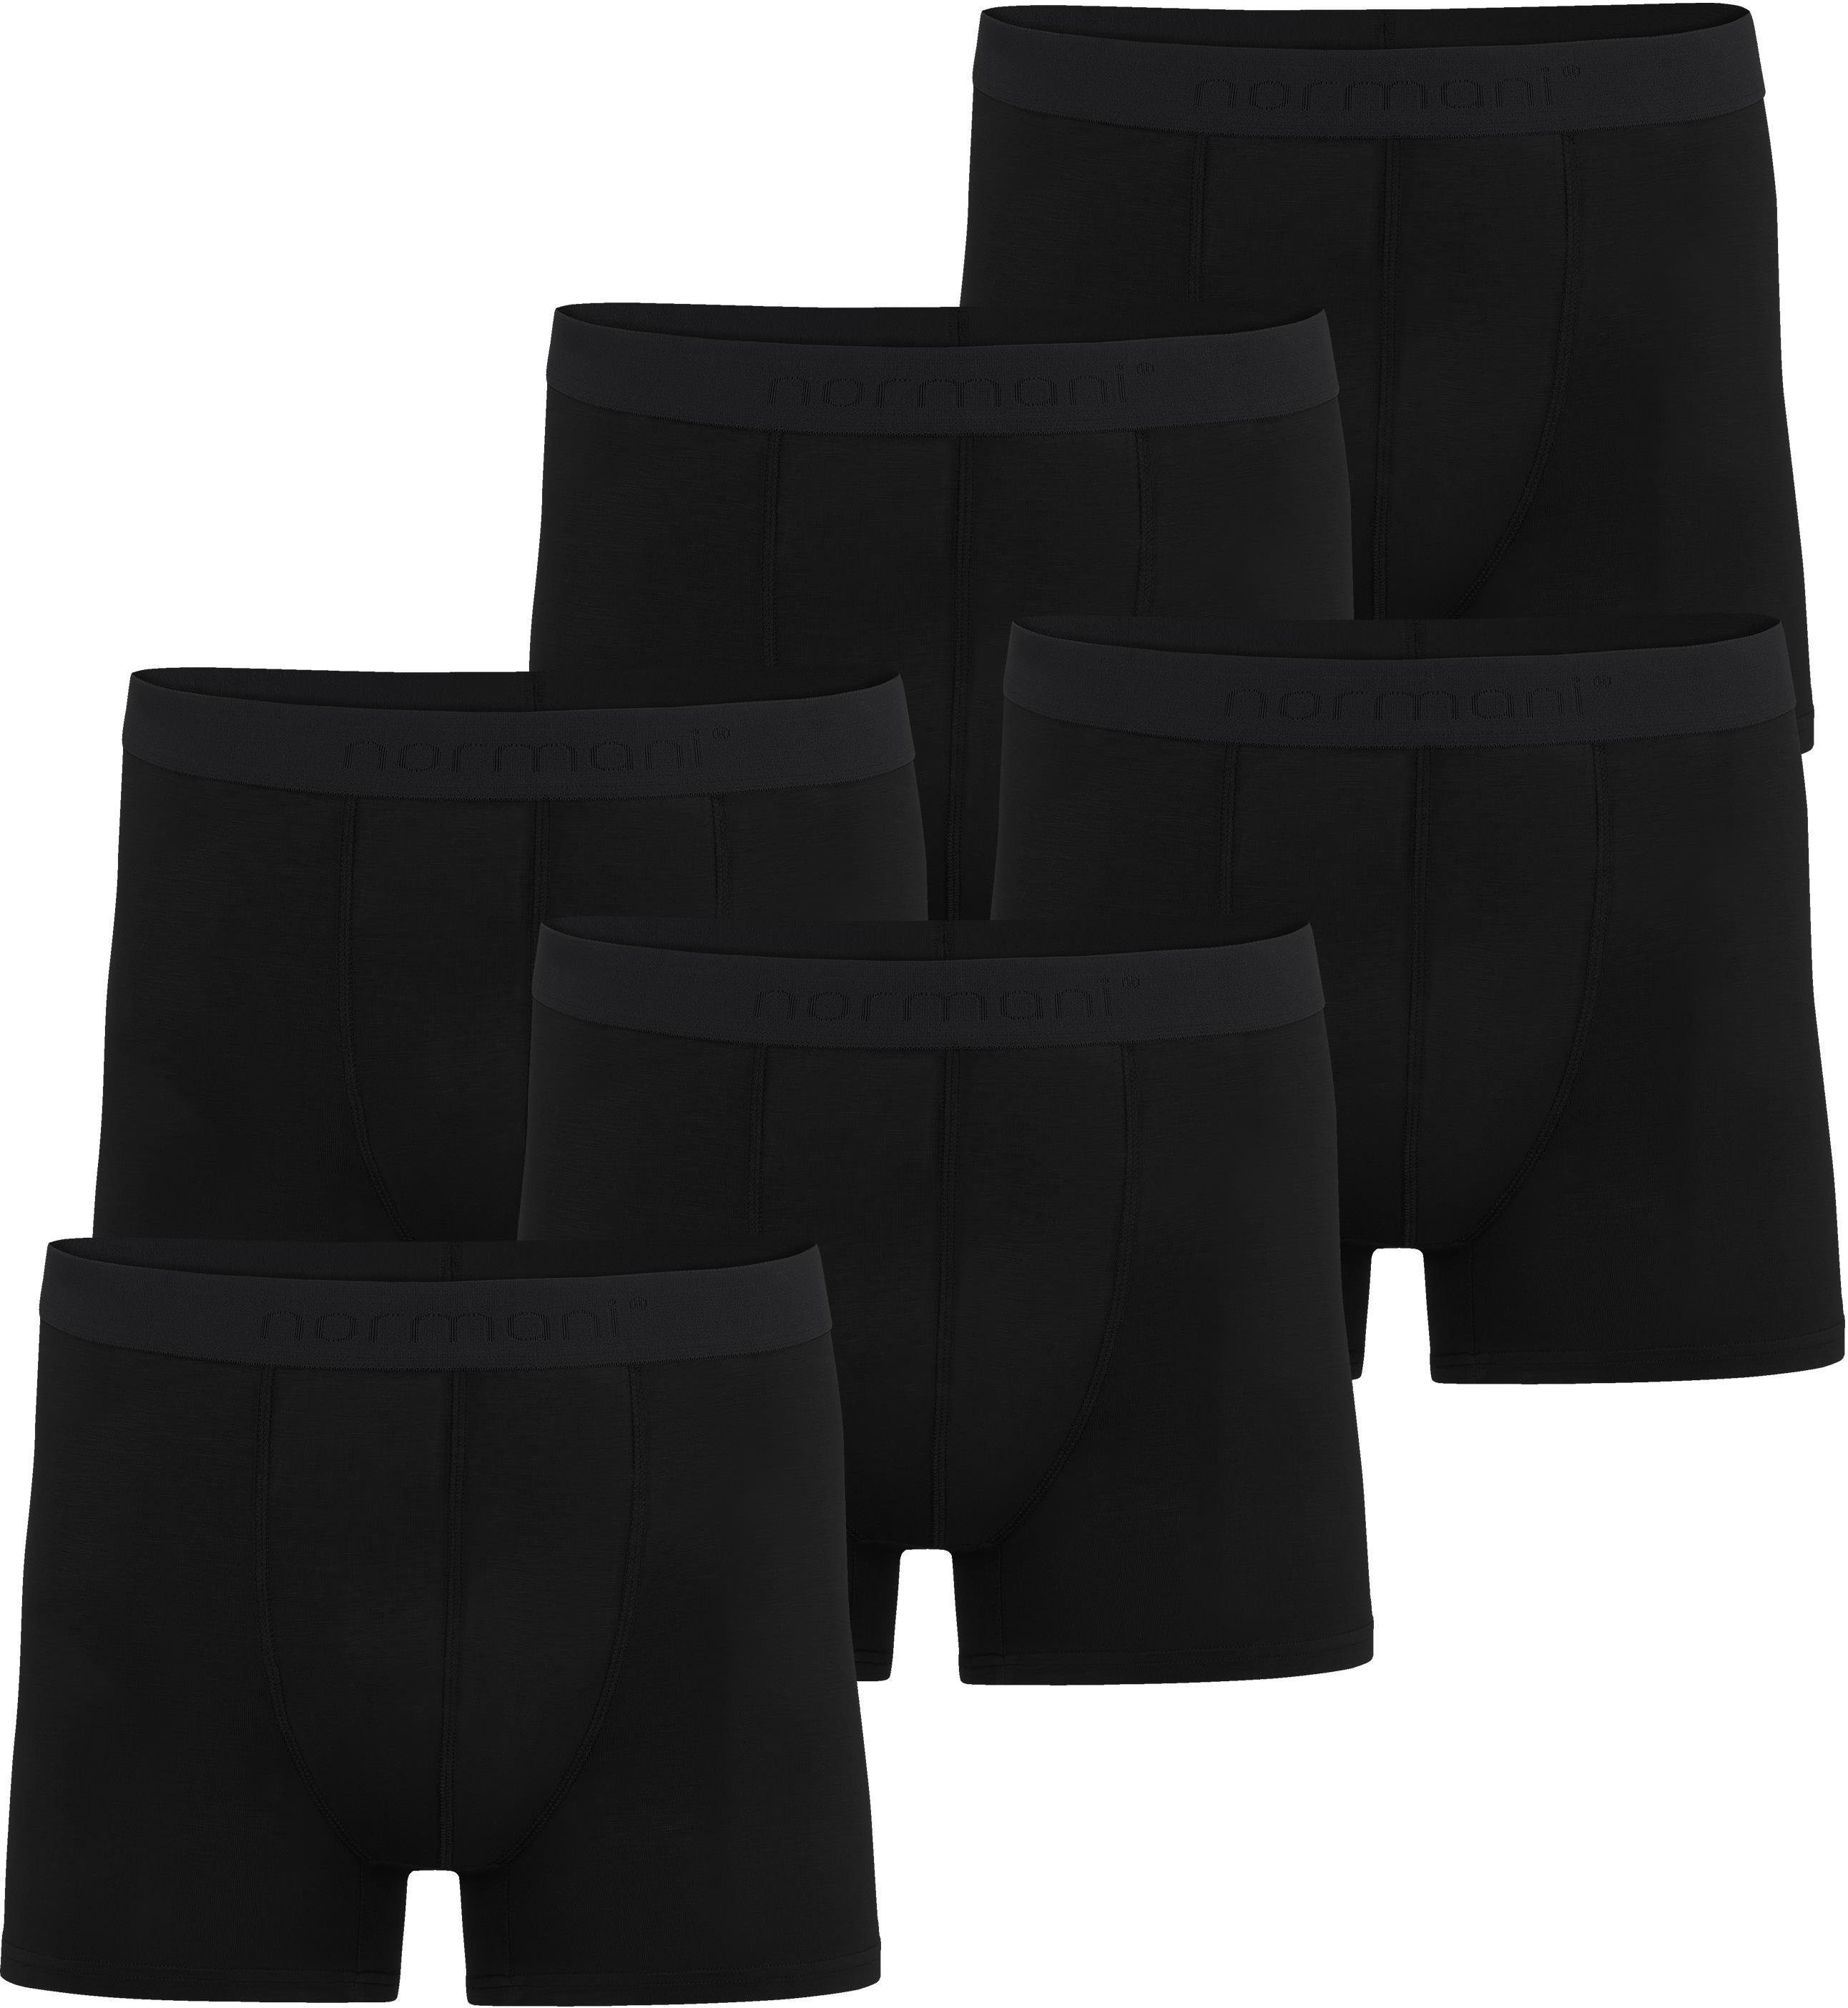 aus aus weicher Bambus-Viskose normani für 6 Männer Schwarz Cubao Boxershorts Herren Viskose Unterhosen Boxershorts